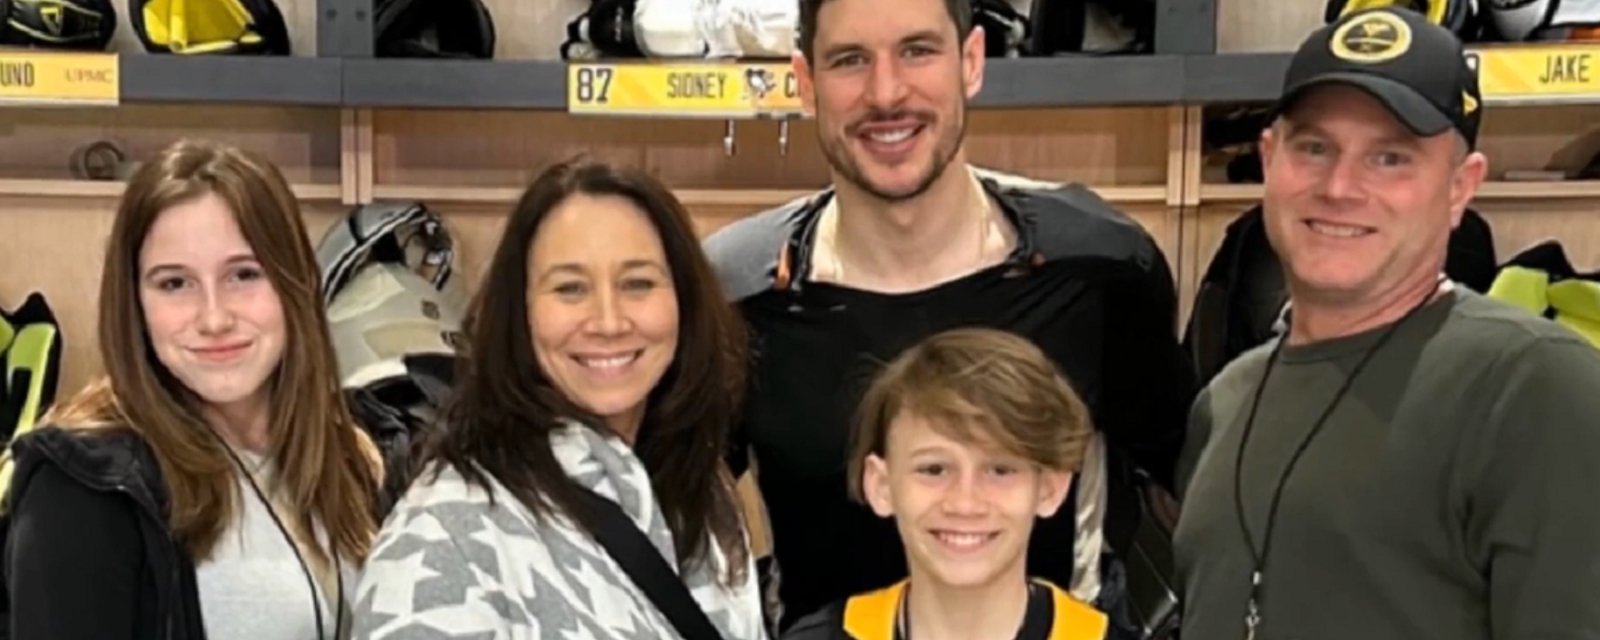 Sidney Crosby makes a sick boy's wish come true.